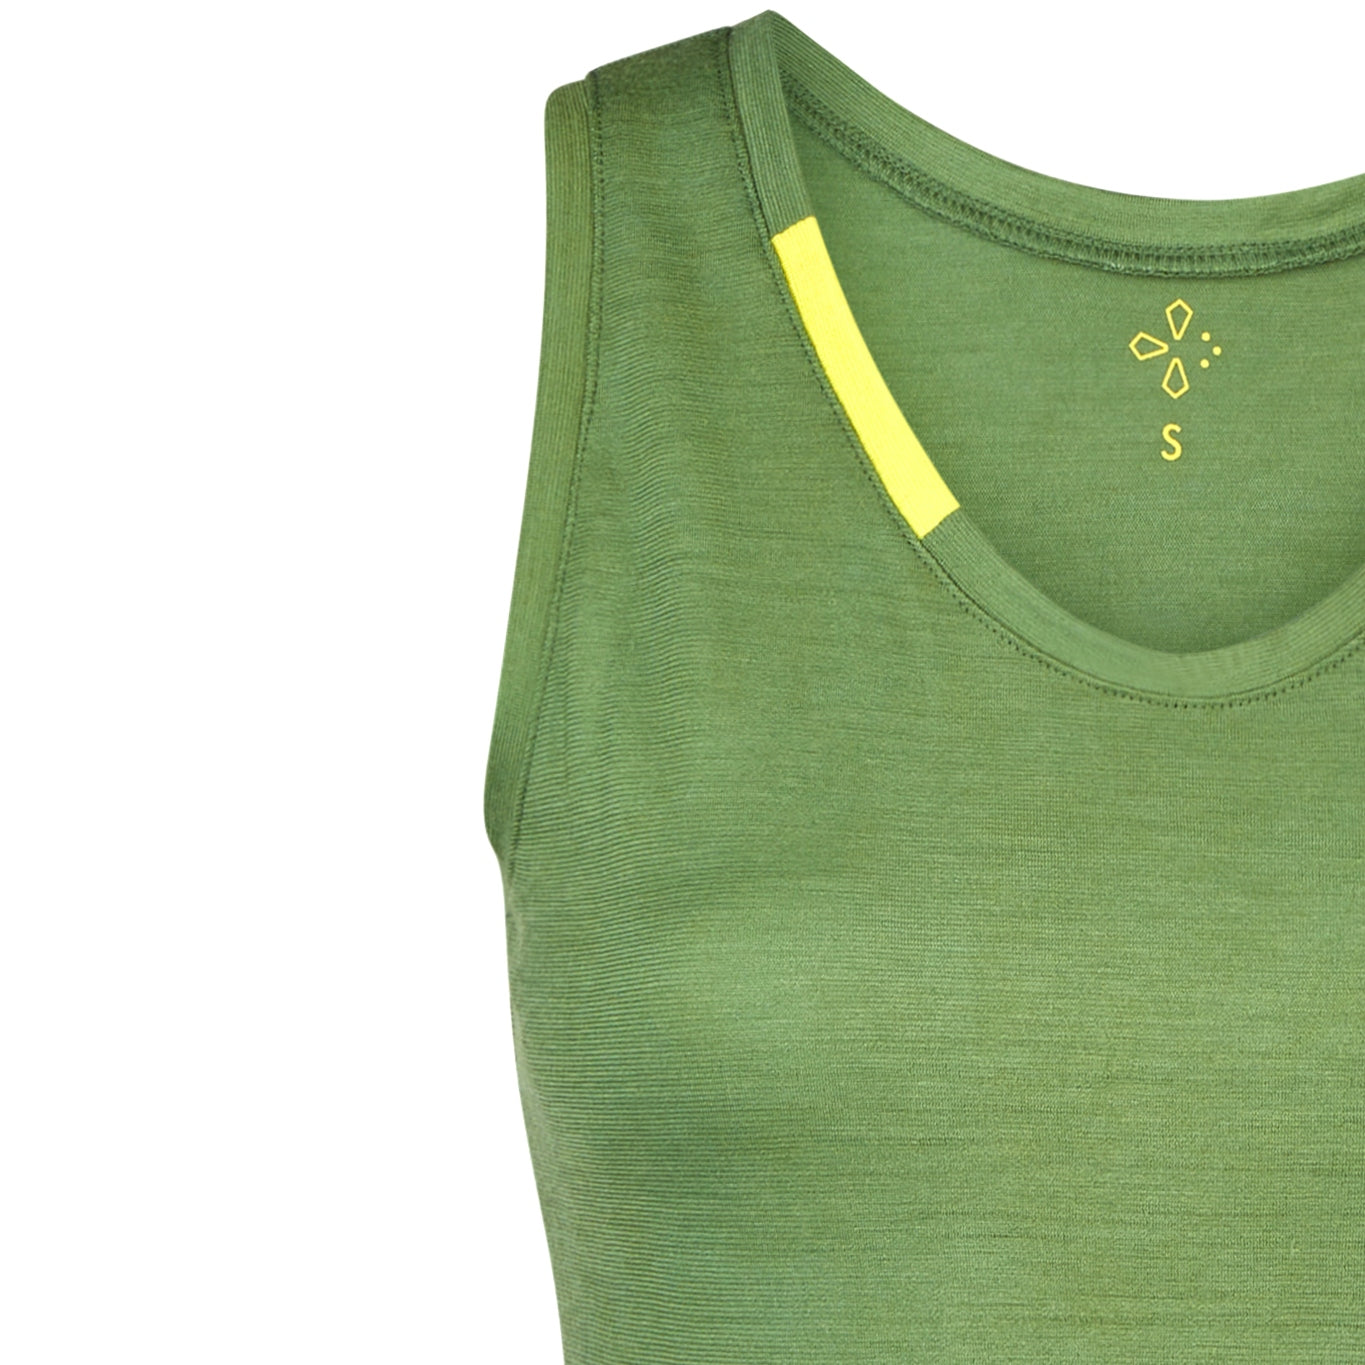 Grüner Tank-Top, Merino Unterhemd für Frauen aus regionaler Wolle, in Deutschland produziert